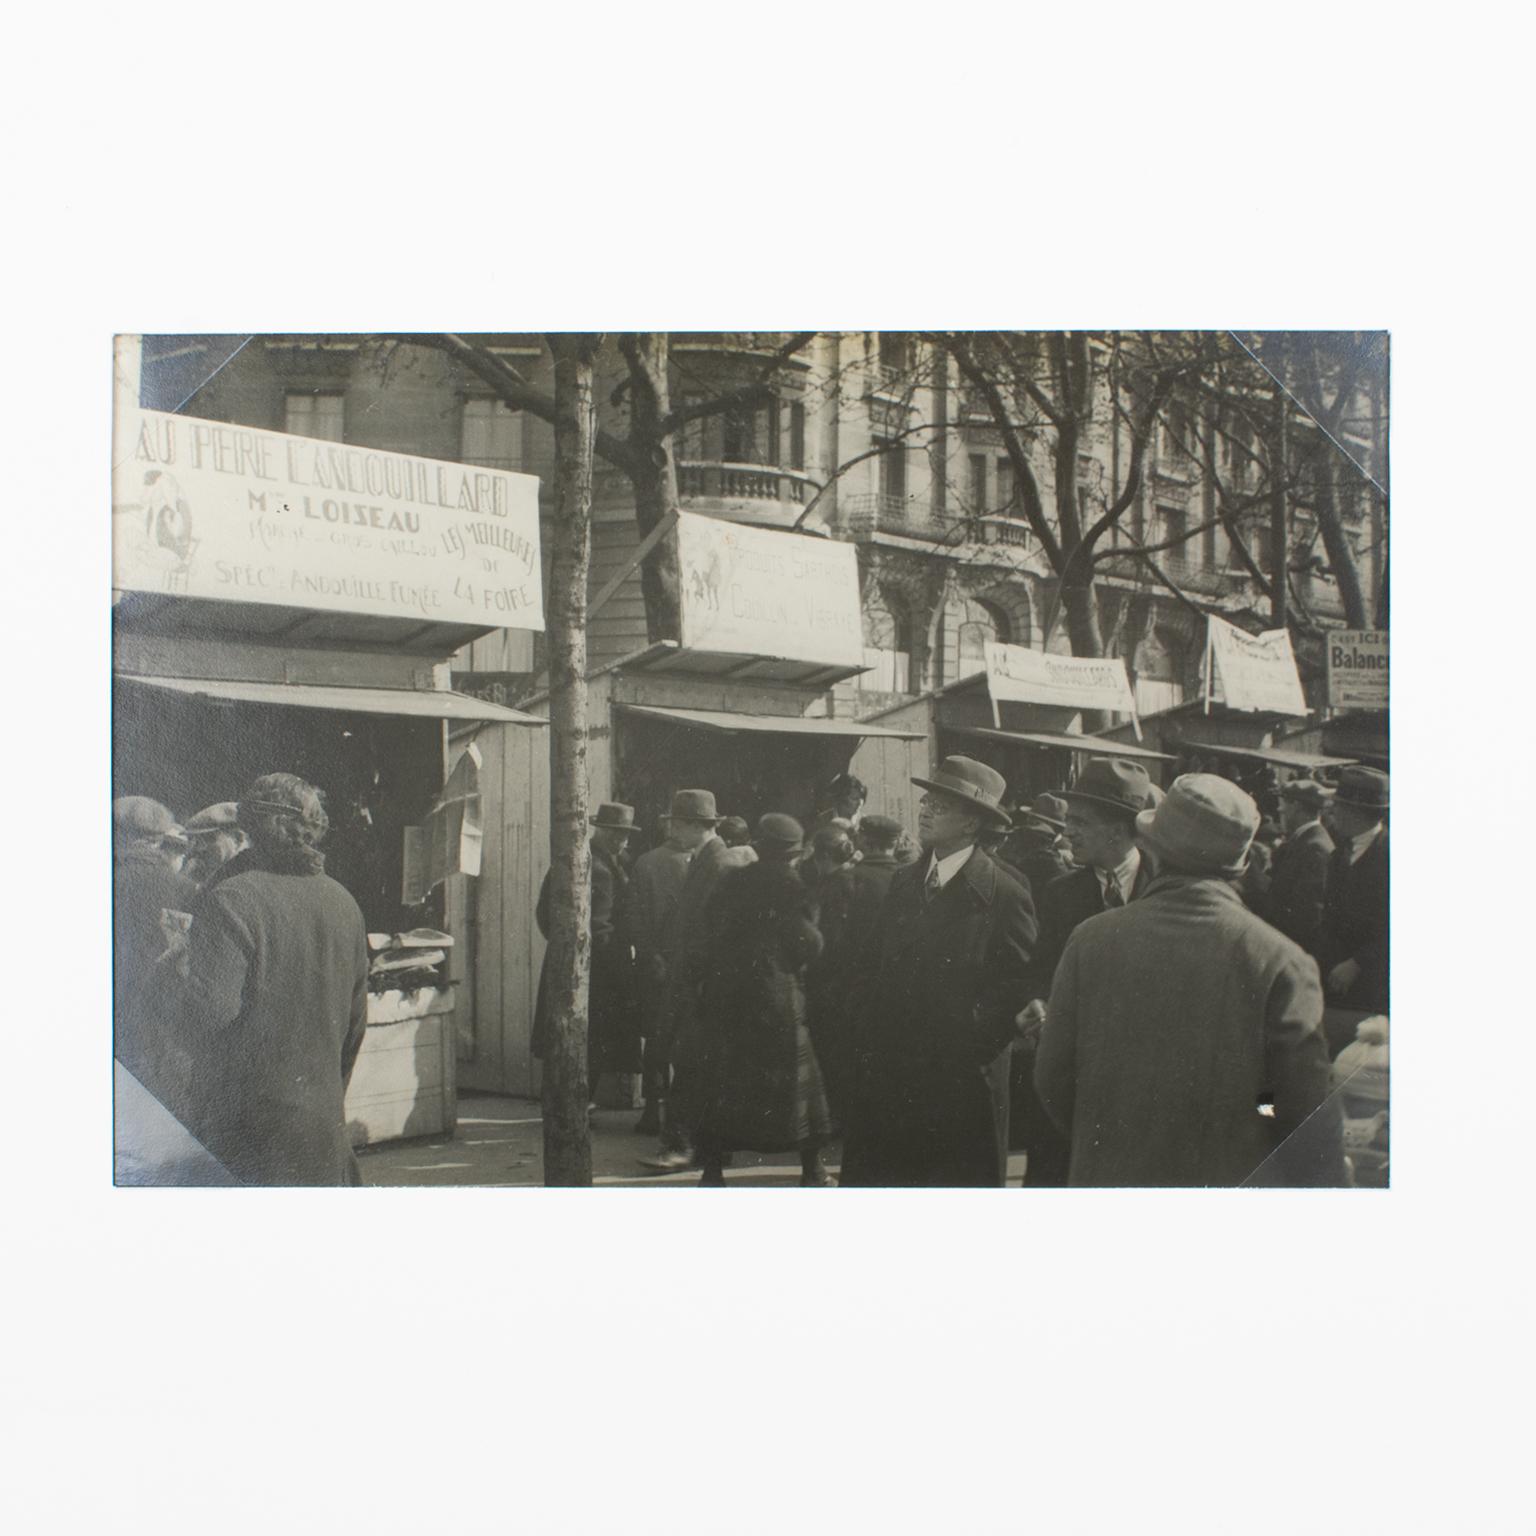 Antike Ausstellung in Paris, 1927, Silbergelatine-Schwarz-Weiß-Fotografie in Schwarz-Weiß – Photograph von Press Photo